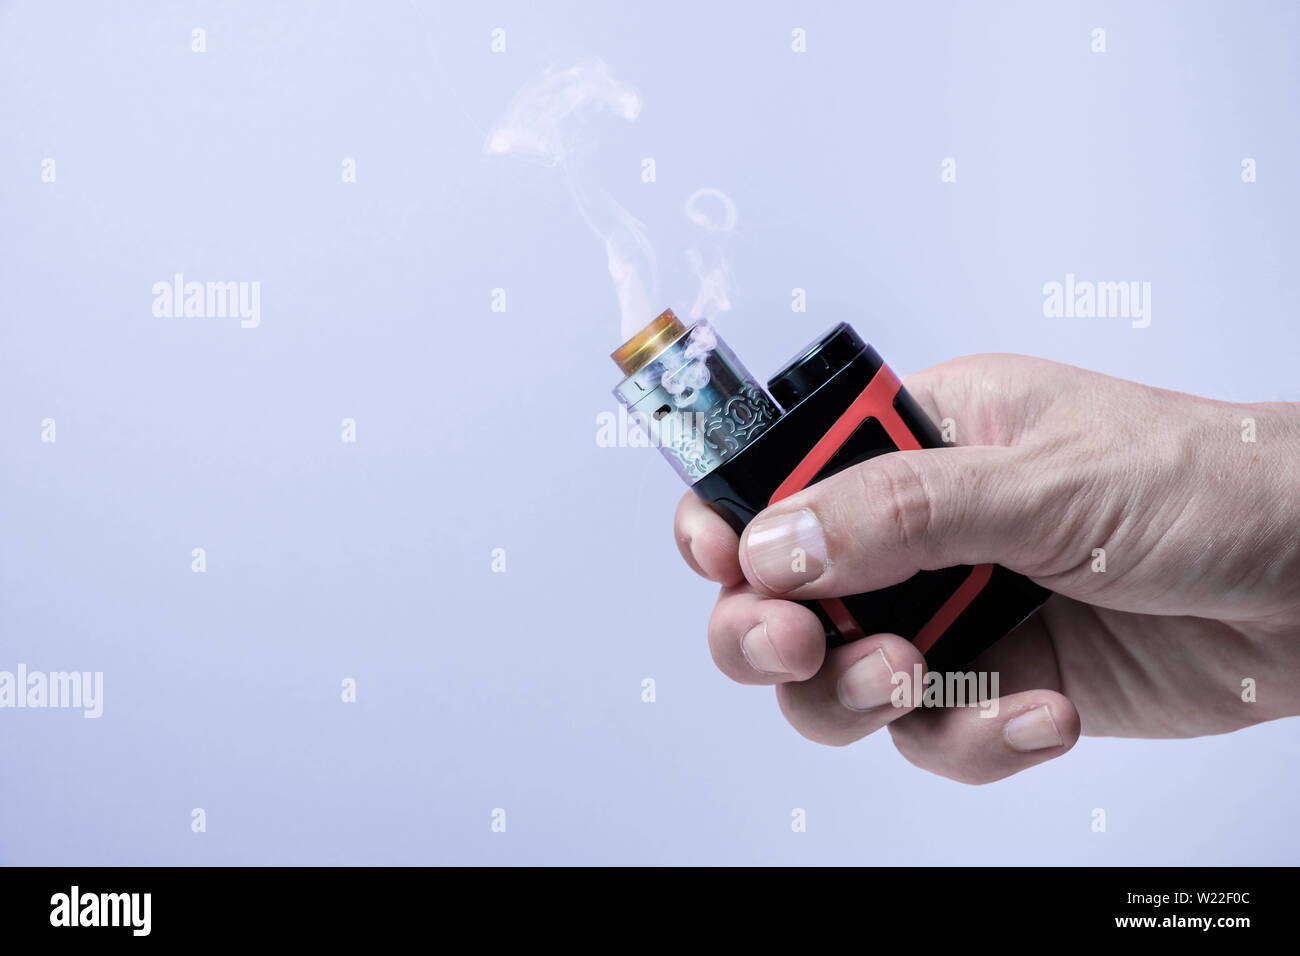 Vape mod e-cig para ayudar a dejar de fumar el tabaco con atomizador rdta sosteniendo en la mano Foto de stock